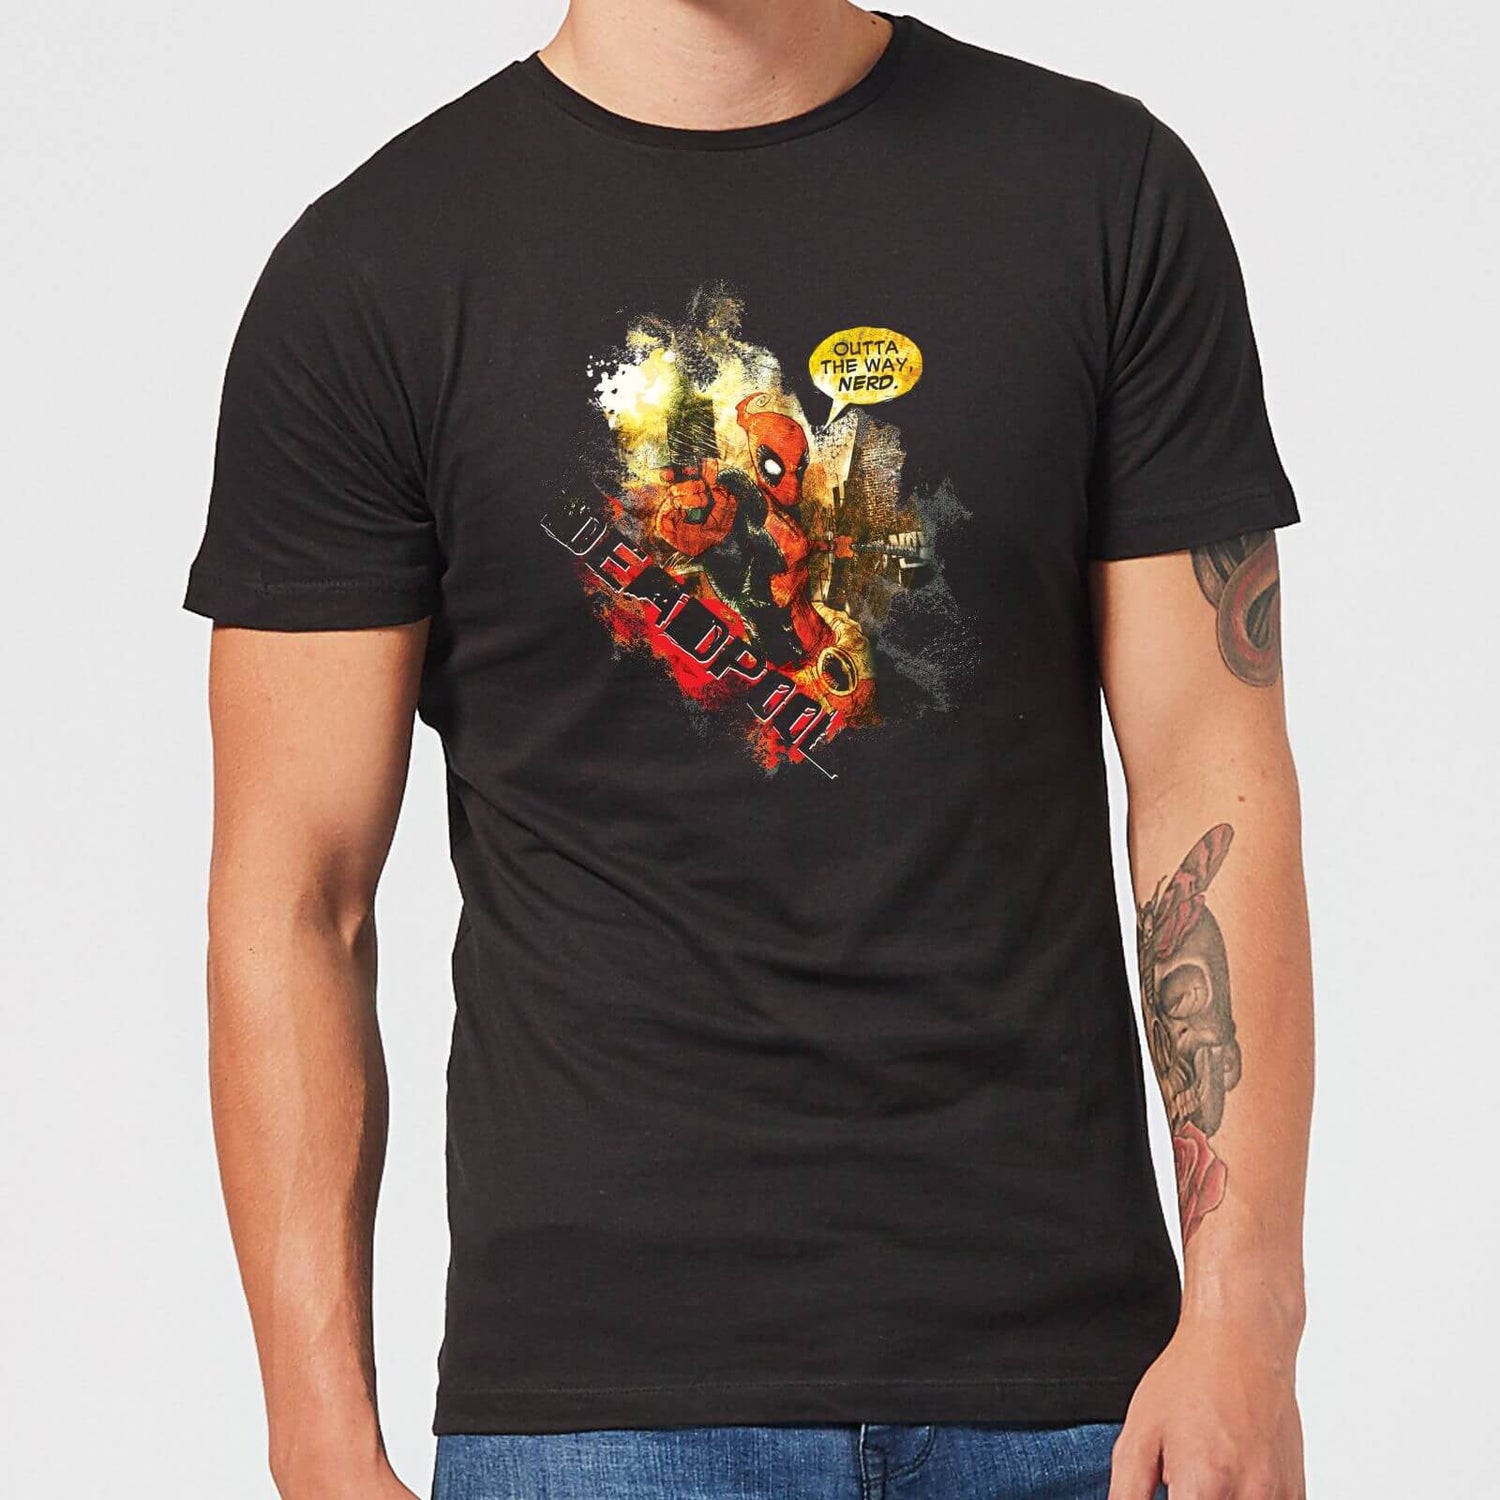 Outta The Way Nerd Deadpool T-Shirt